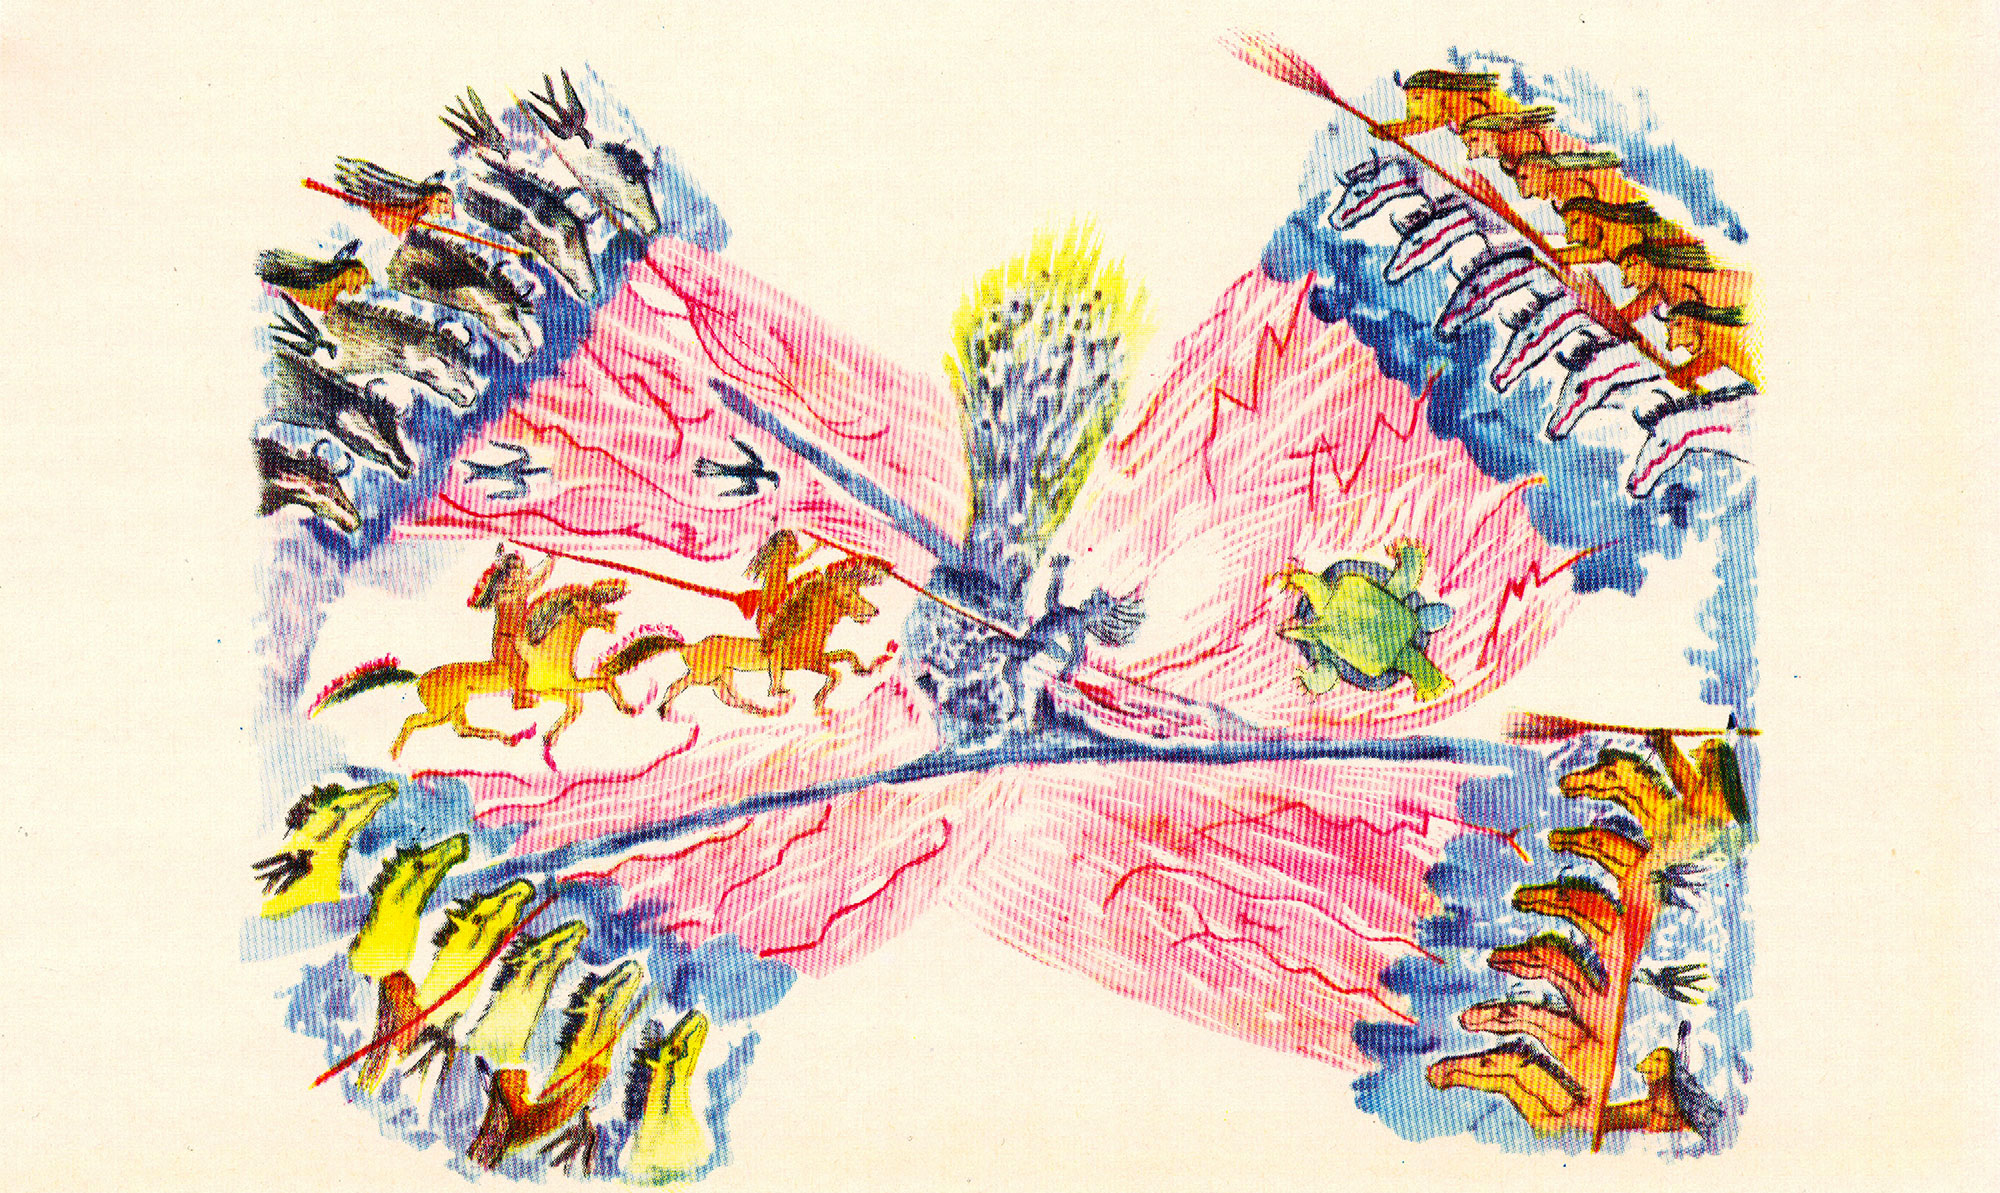 Orso in Piedi (Sioux), La visione di Alce Nera, acquerello, 1956